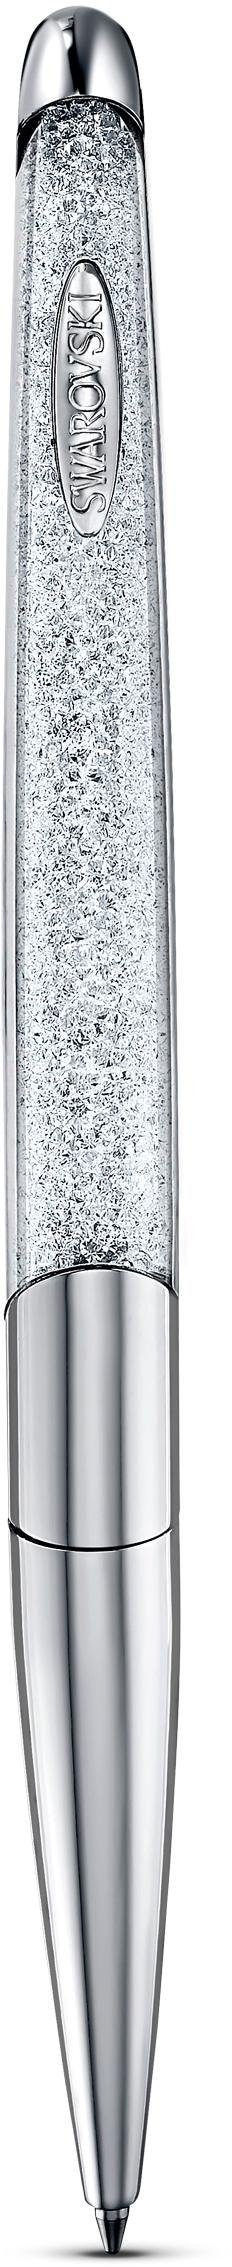 Swarovski Kugelschreiber »Crystalline Nova, weiß, verchromt, 5534324«, mit  Swarovski® Kristallen | BAUR | Kugelschreiber